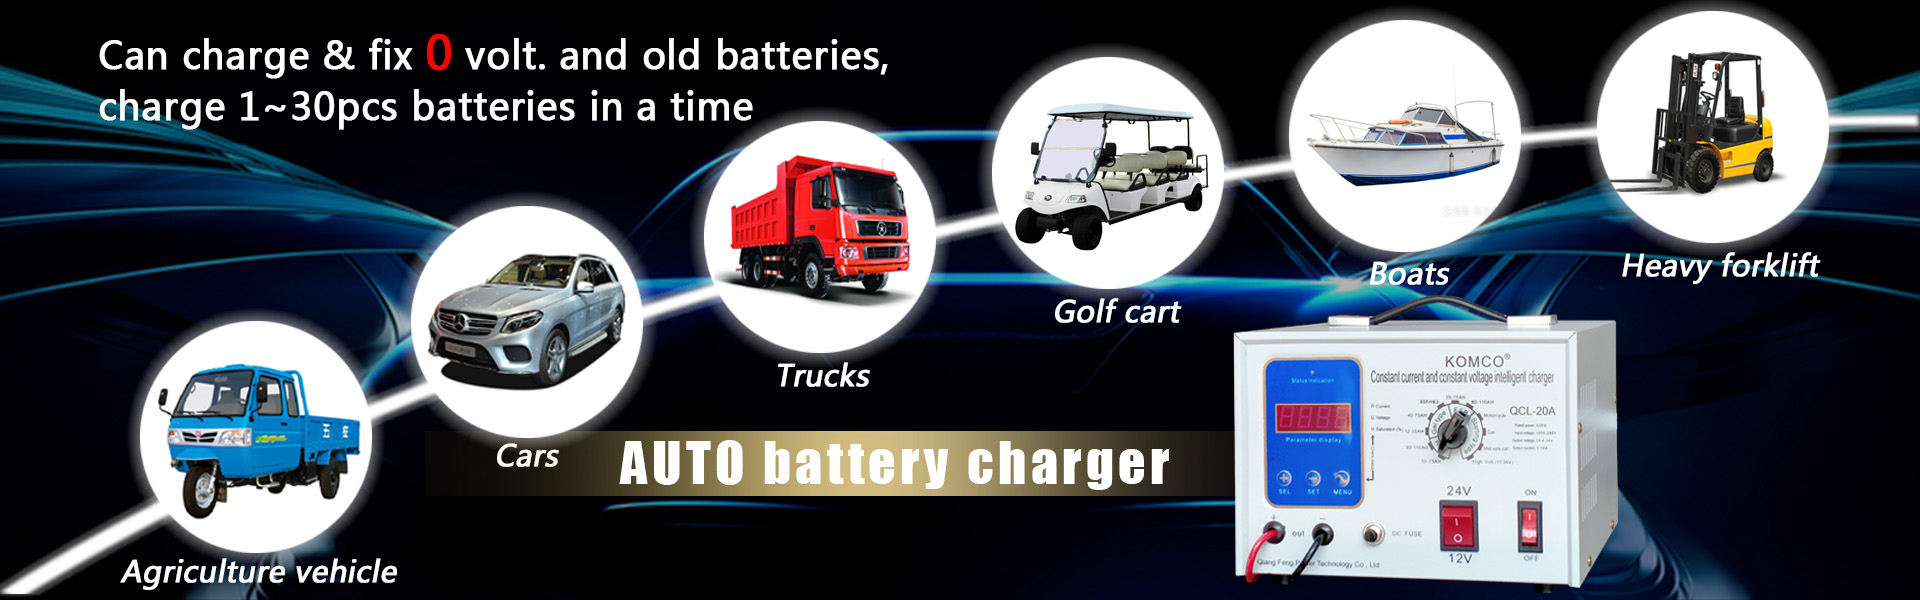 Încărcător de baterii auto, încărcător de baterie Auto, încărcător de baterii 12V 24V,Qiangfeng Power Technology Co., Ltd